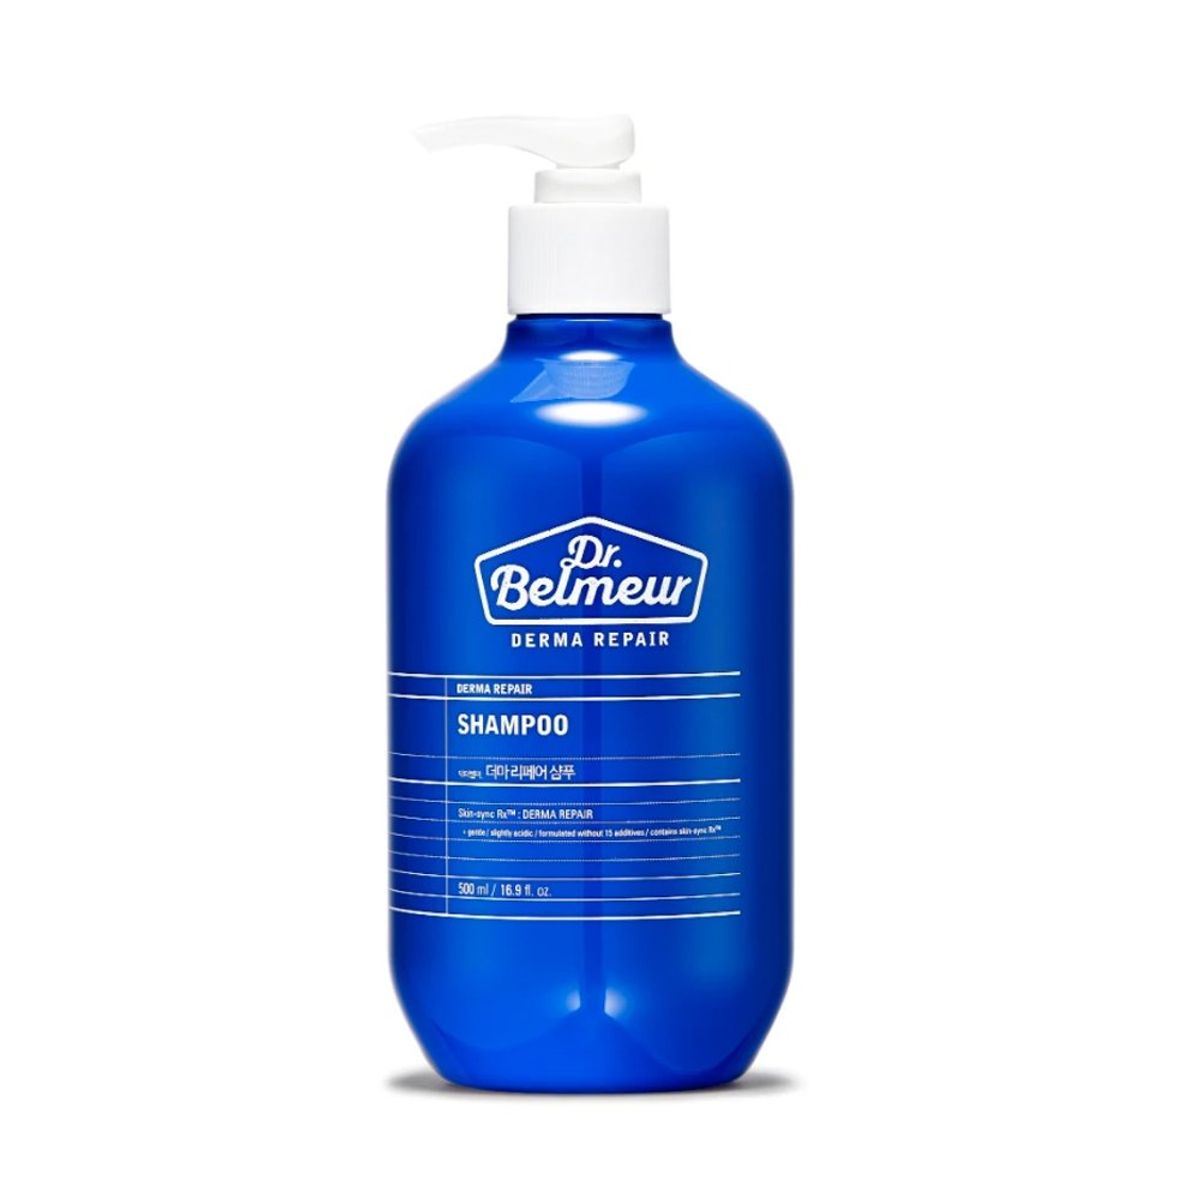 dau-goi-phuc-hoi-ngan-rung-toc-dr-belmeur-derma-repair-shampoo-500ml-6